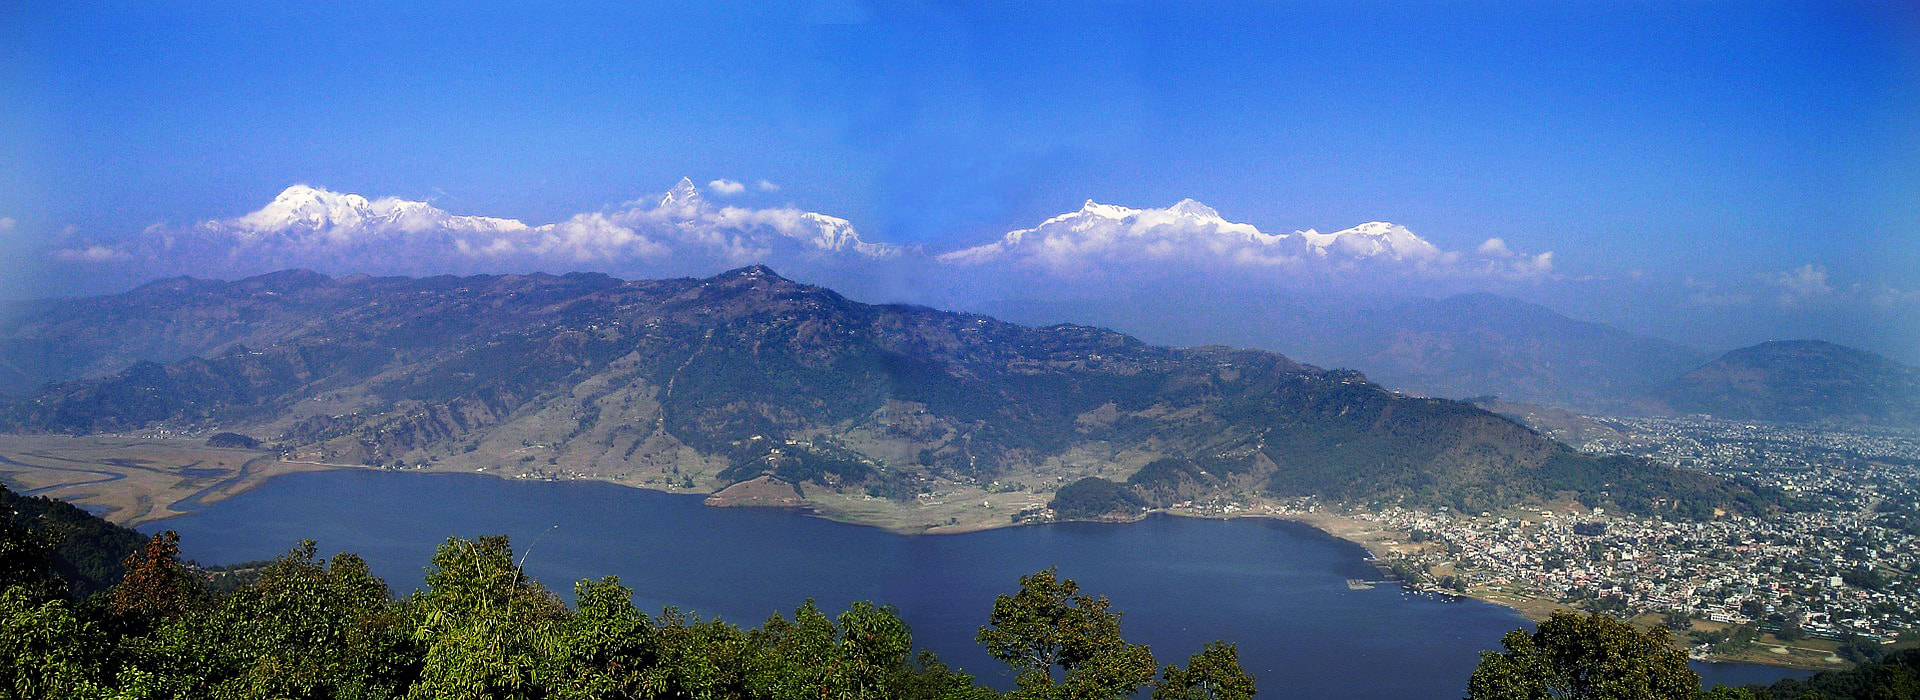 Pokhara at Phewa Lake in Nepal